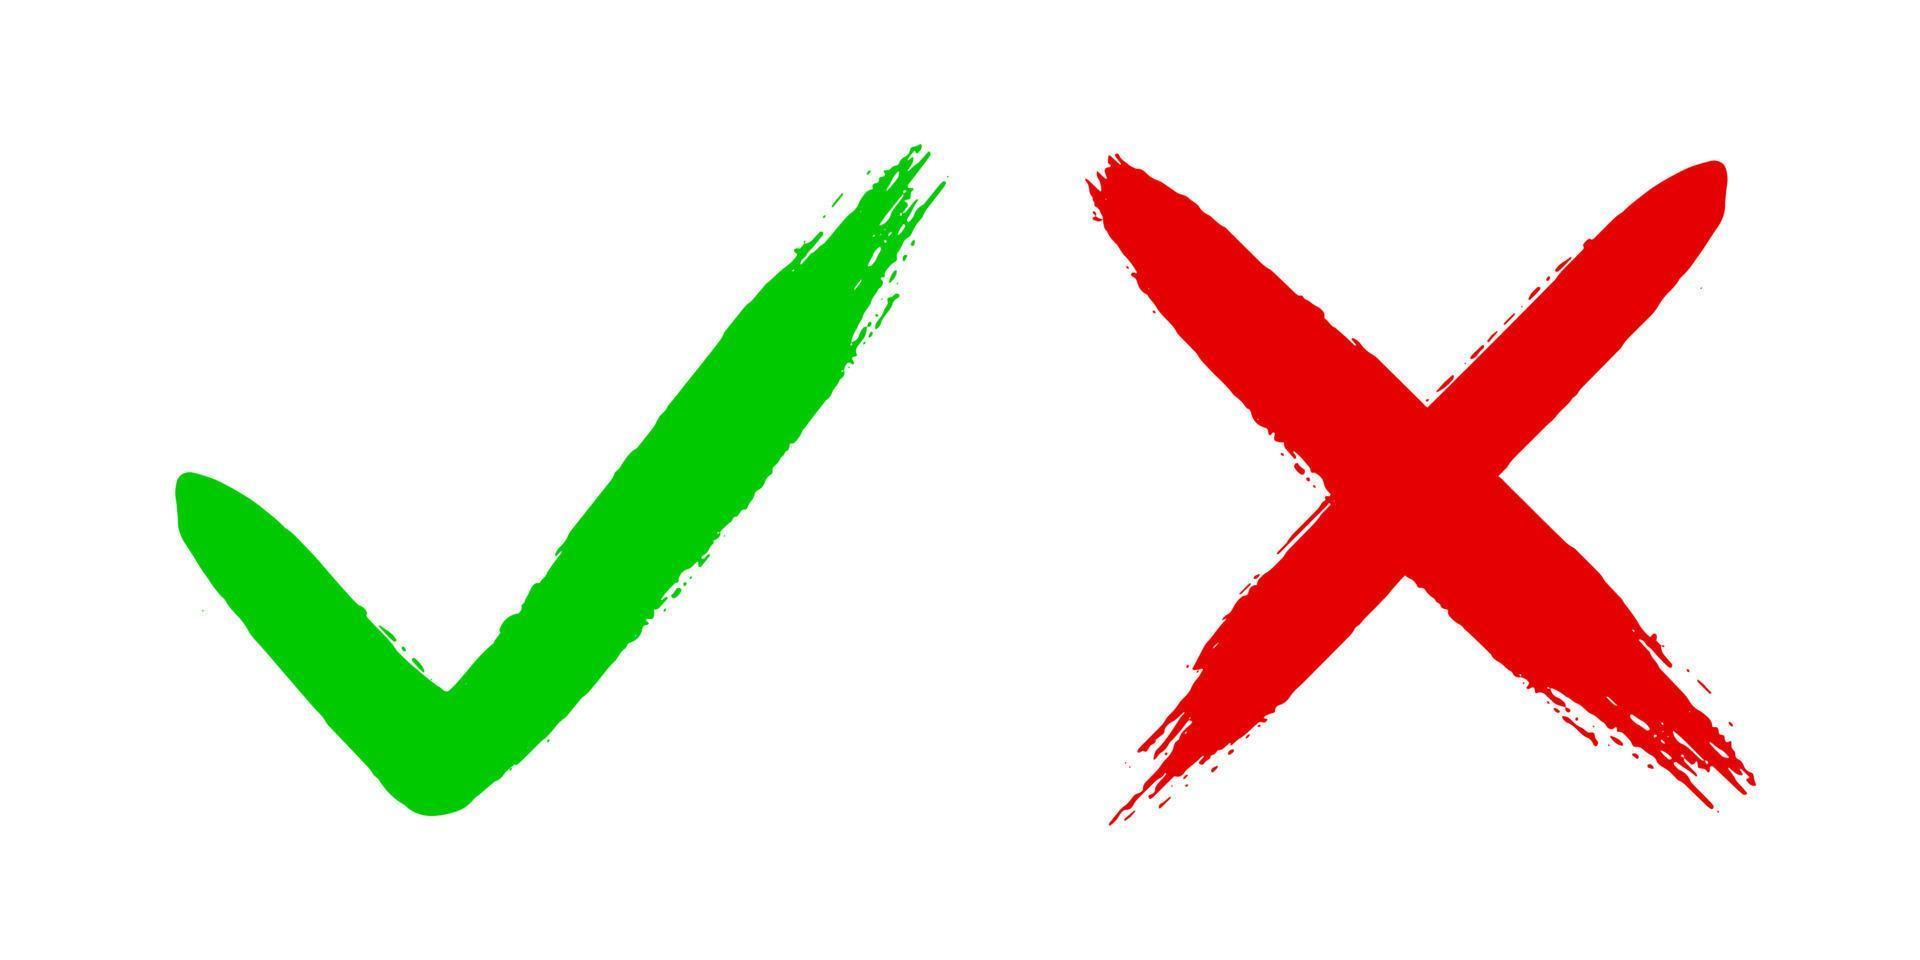 due pennellate disegnate a mano grunge sporco incrociano x e spuntano v ok segno di spunta illustrazione vettoriale isolata su sfondo bianco.